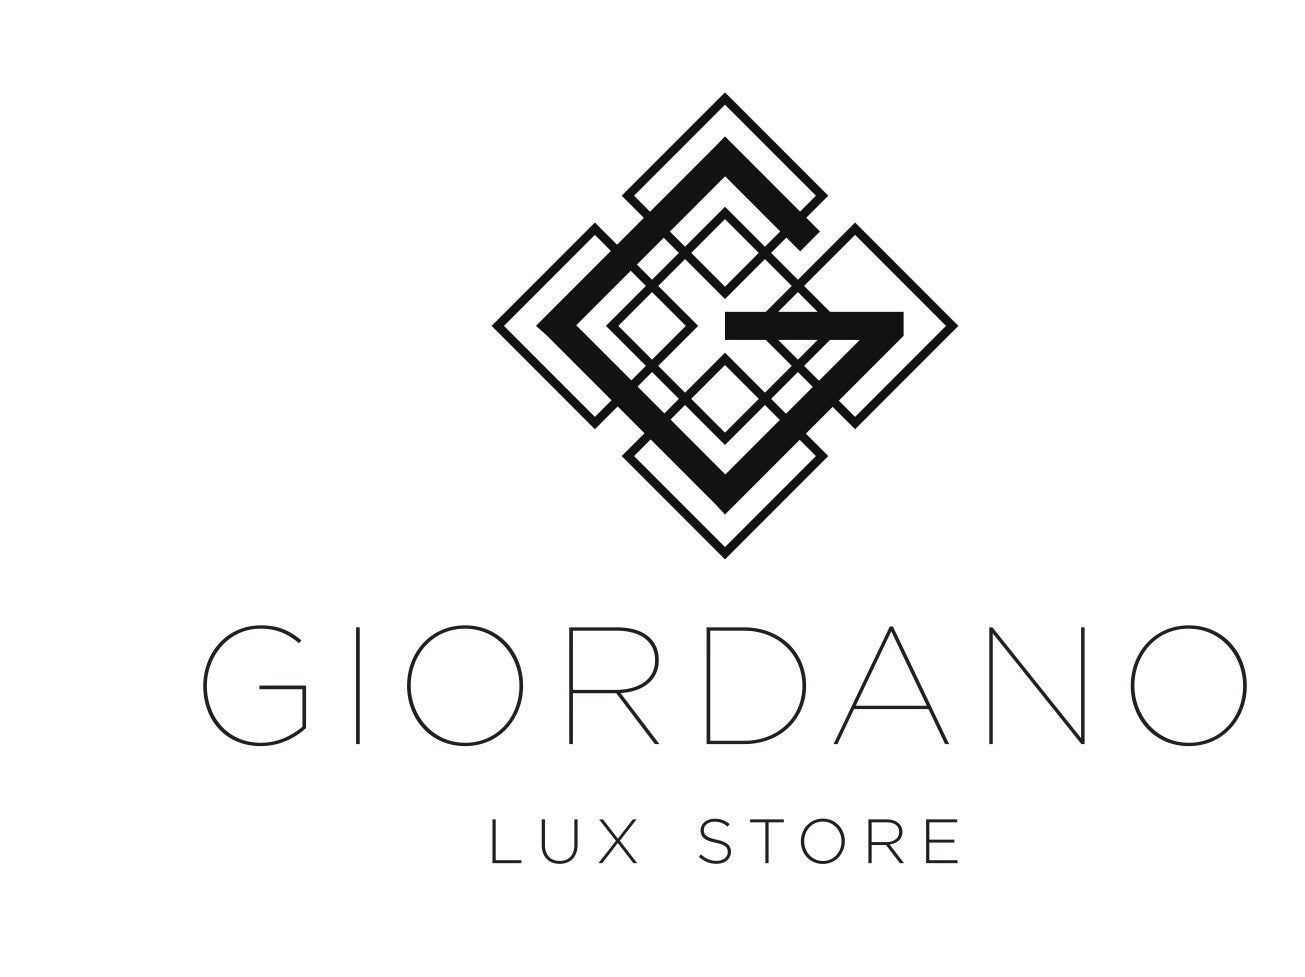 BRAND – Giordano Lux Store